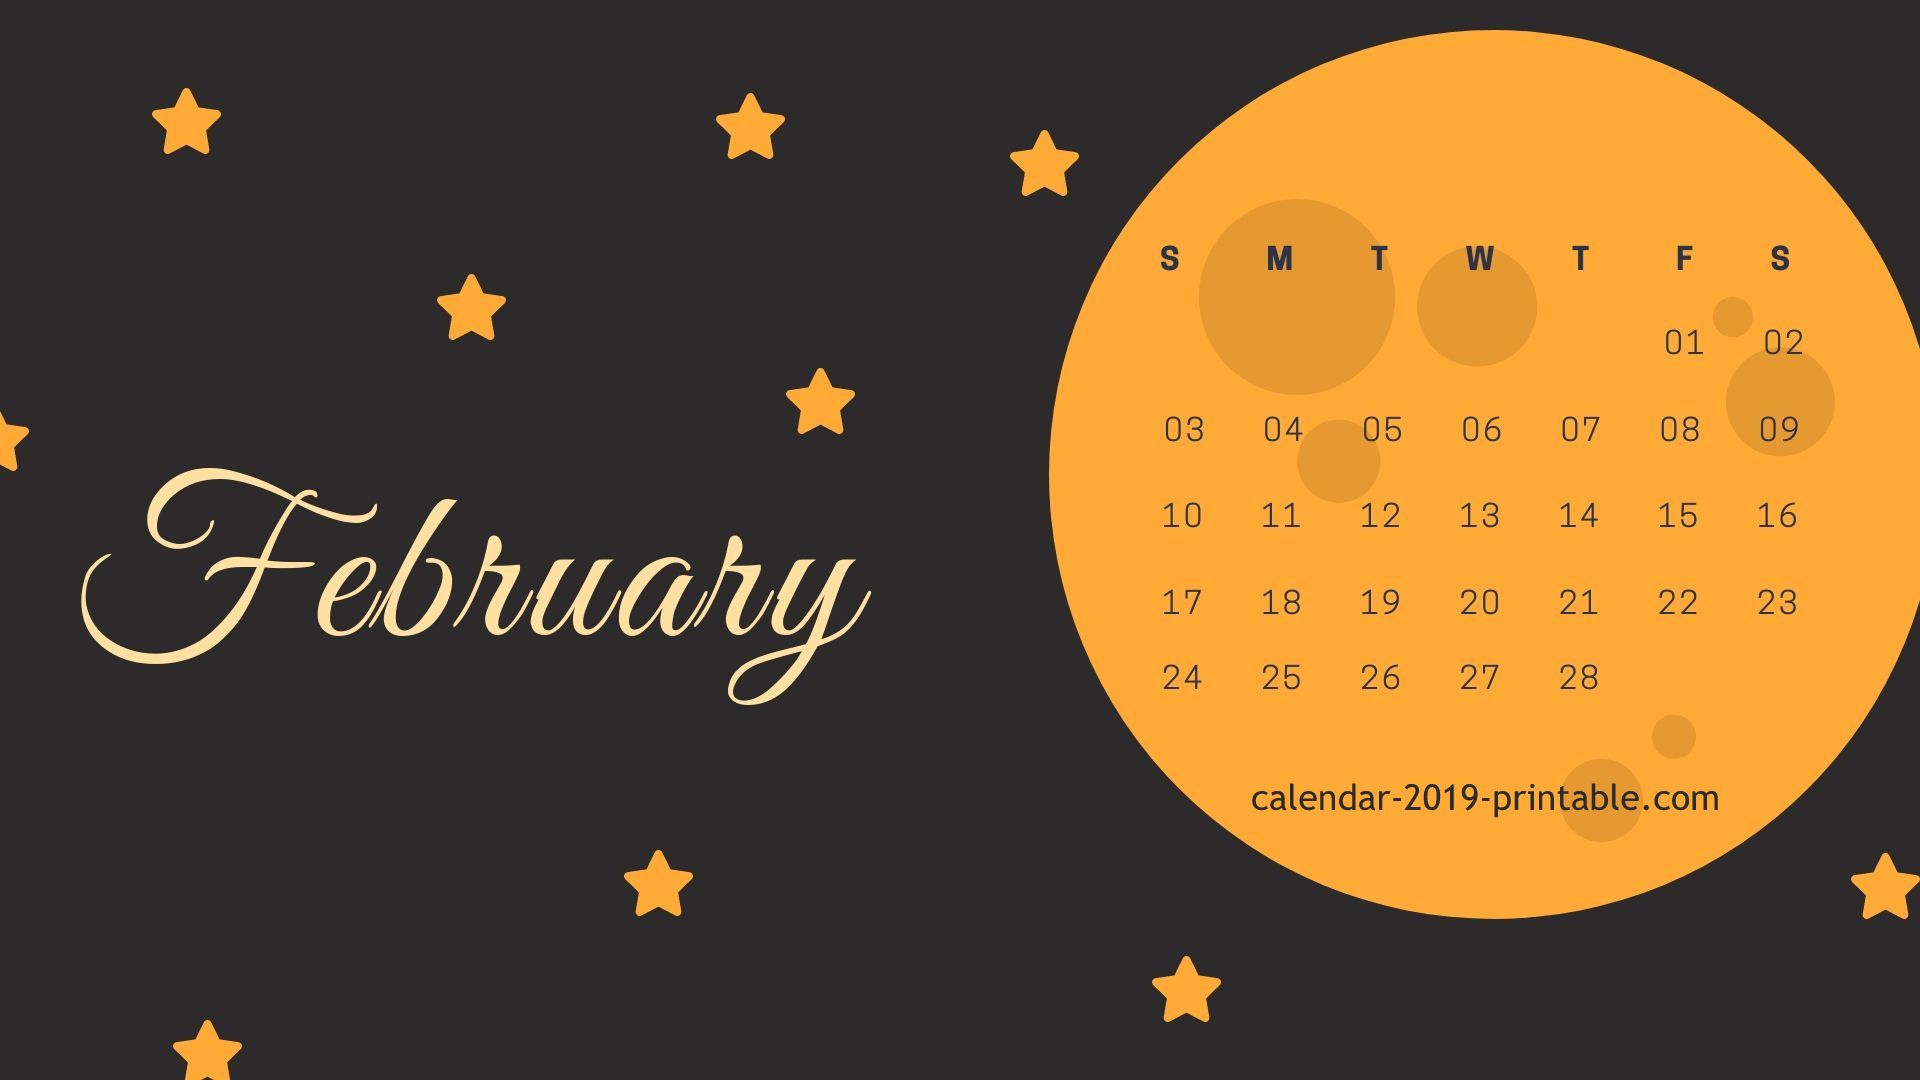 February 2019 Computer Calendar Wallpaper - Desktop Wallpaper February 2019 - HD Wallpaper 